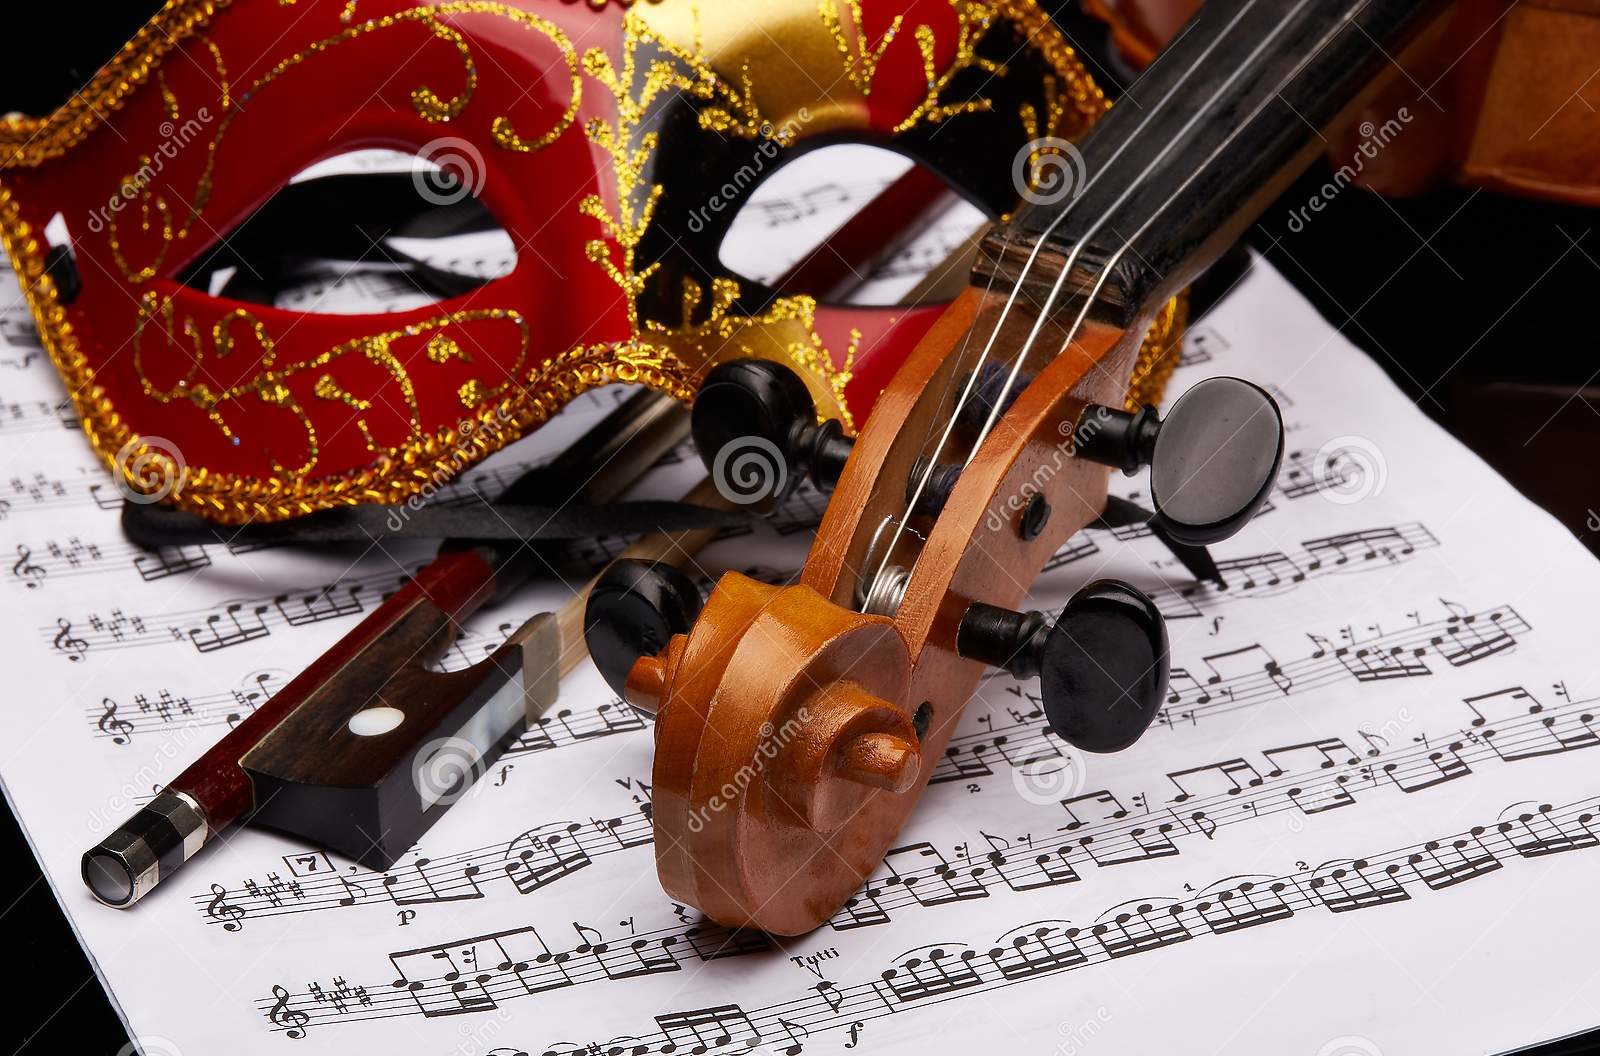 Театр скрипка. Венецианская маска со скрипкой. Скрипка театр. Рамка со скрипкой и маской. Скрипичный ключ и Театральная маска.